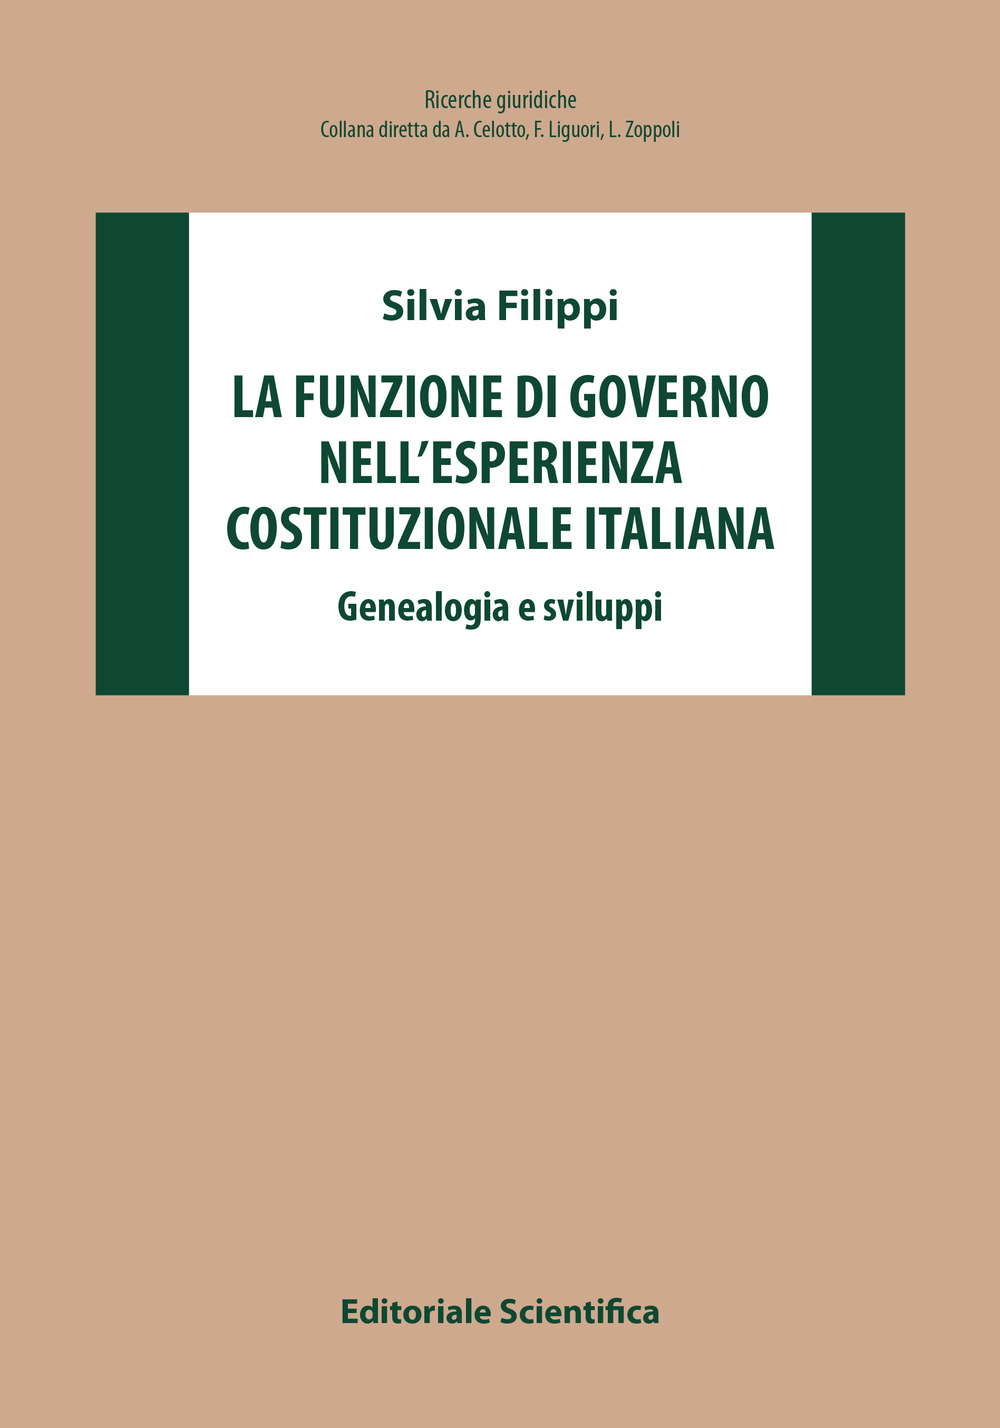 La funzione di governo nell'esperienza costituzionale italiana. Genealogia e sviluppi